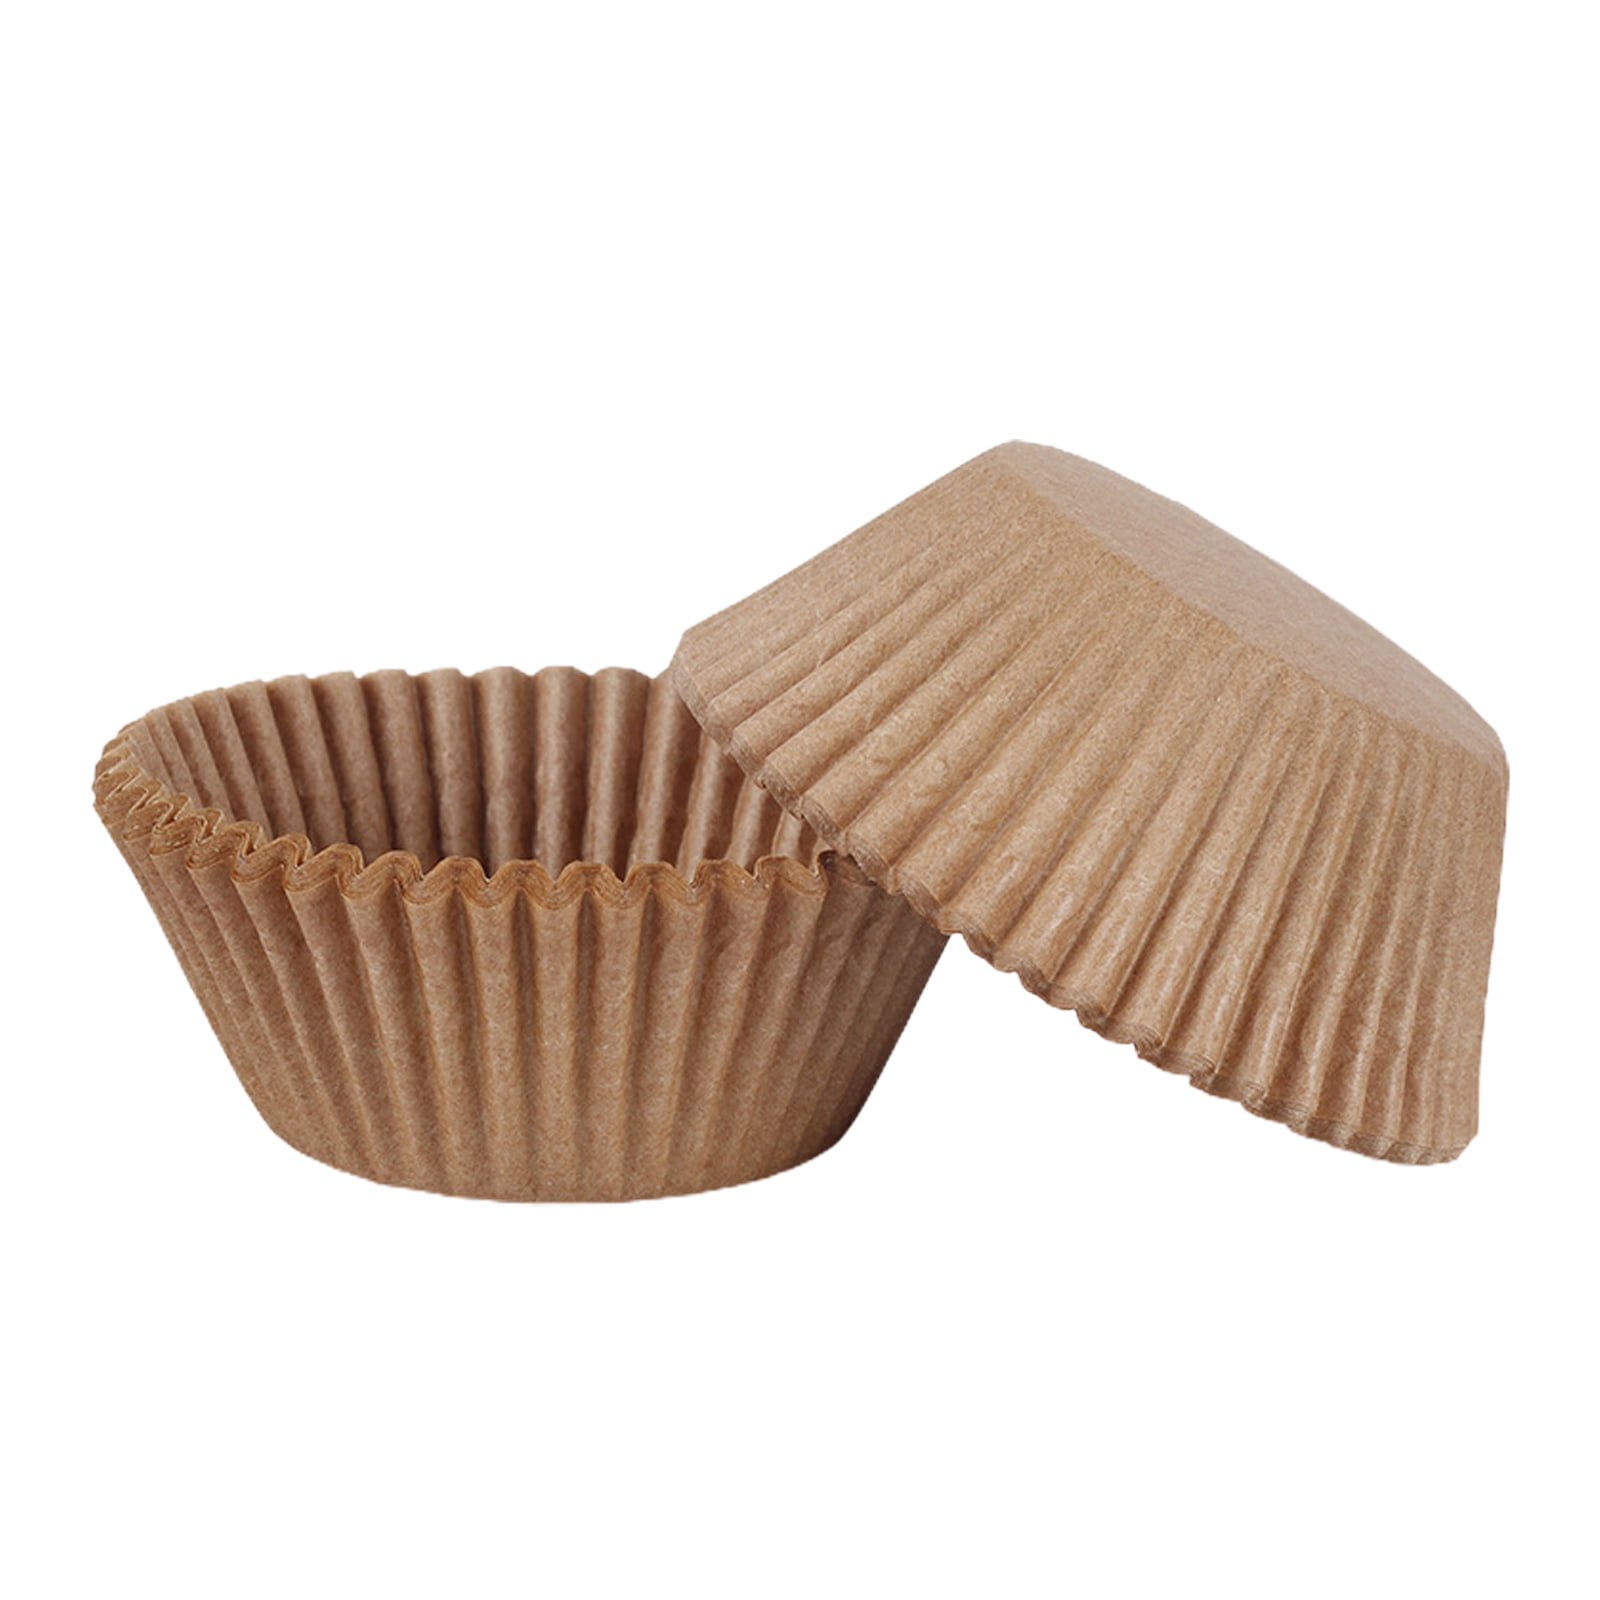 100PCS Mini Cupcake Liners Tazas redondas de papel para hornear Moldes para muffins con tapa 产 marrón Mini Cupcake con Liners 